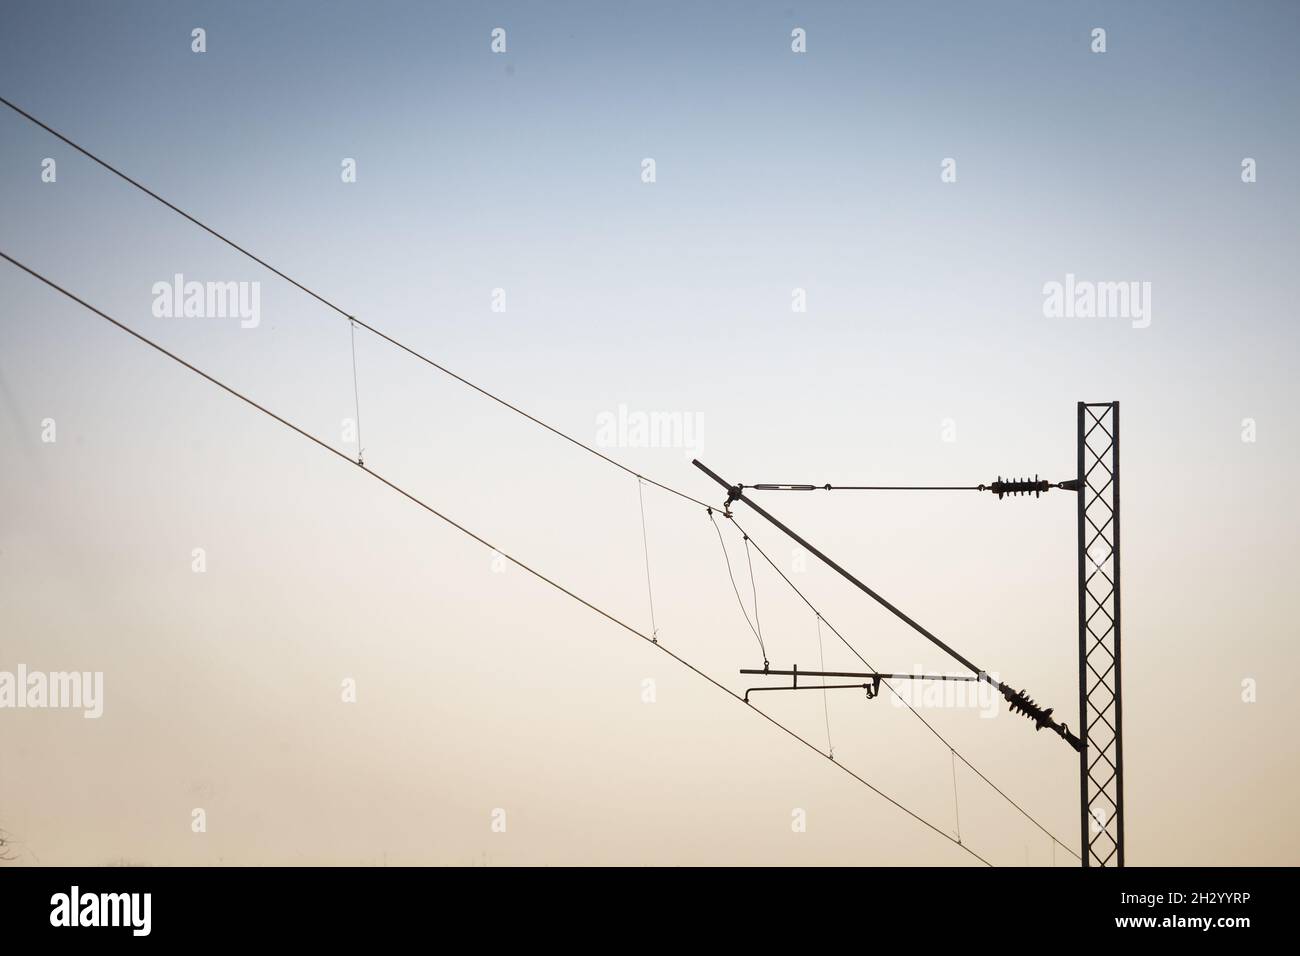 Illustration d'une ligne aérienne caténaire d'une voie ferrée, utilisée pour fournir de l'électricité aux chemins de fer et aux trains. Banque D'Images